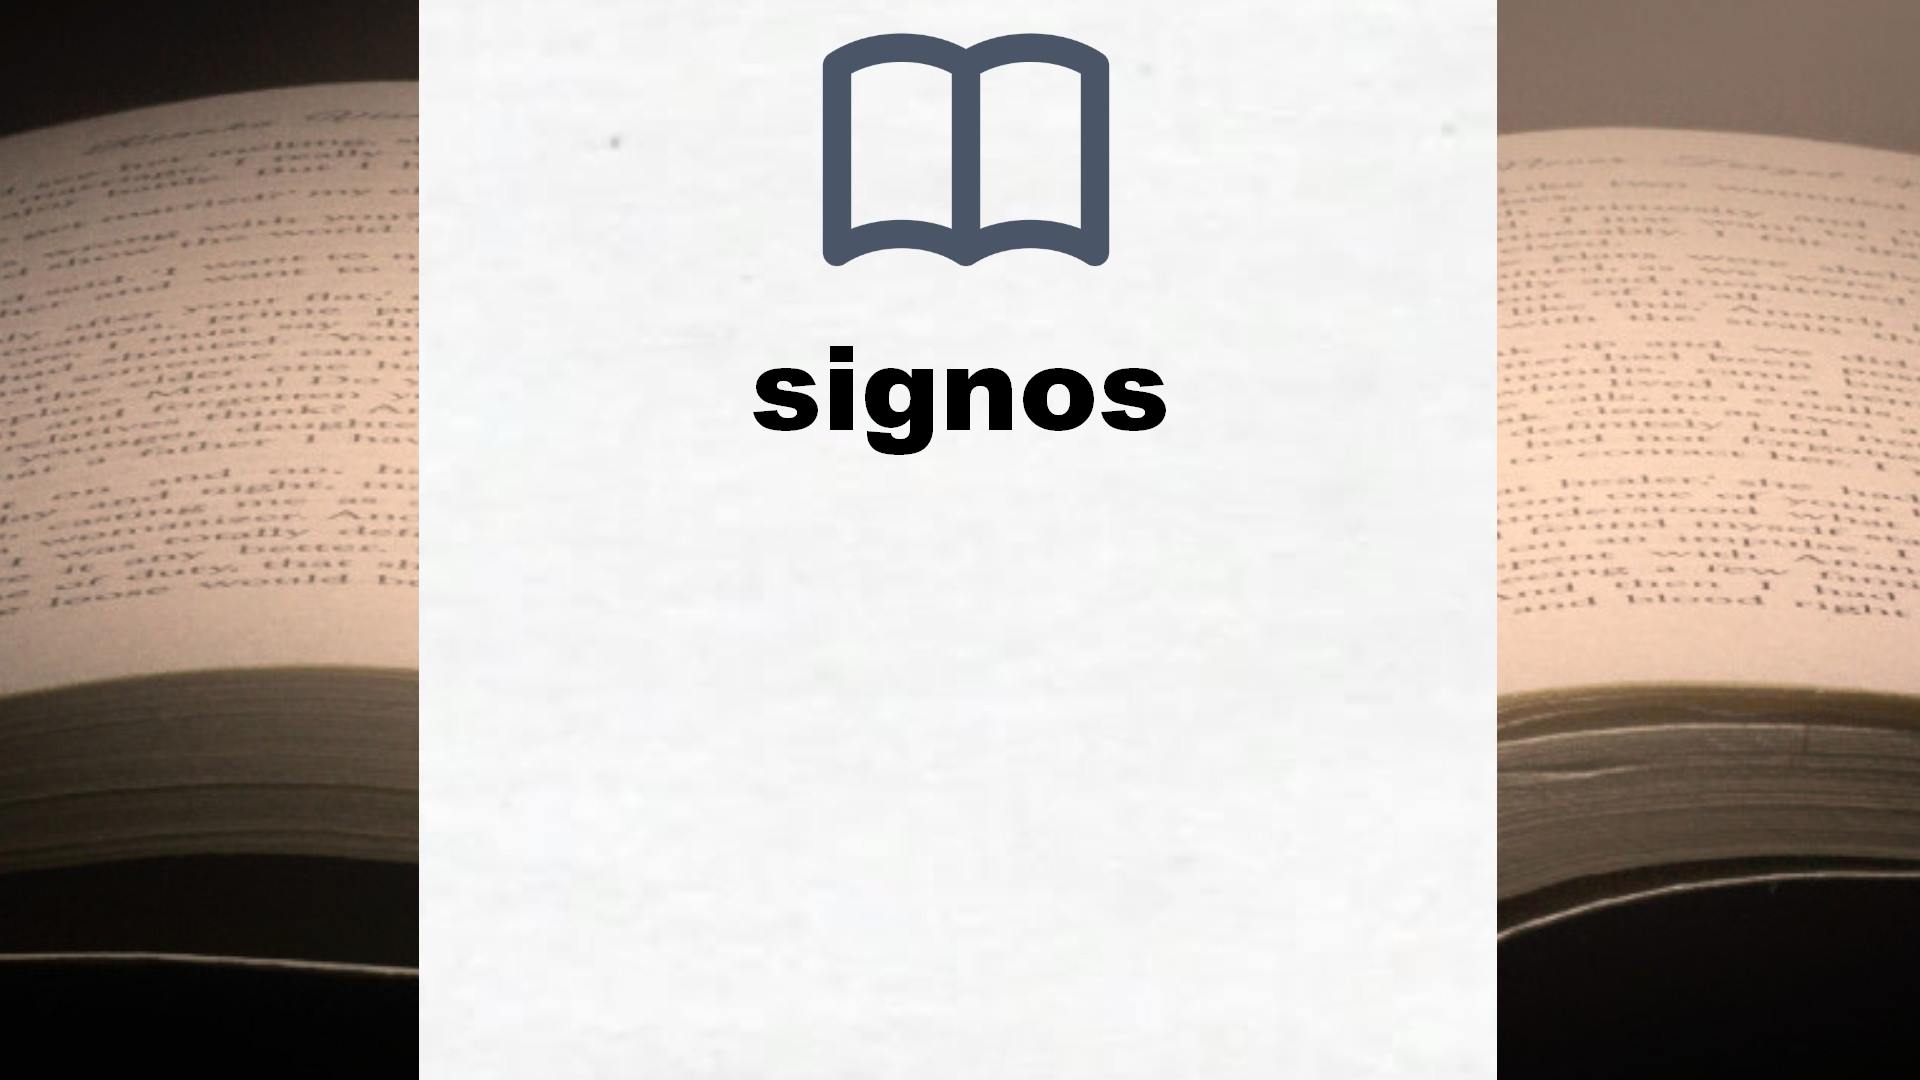 Libros sobre signos